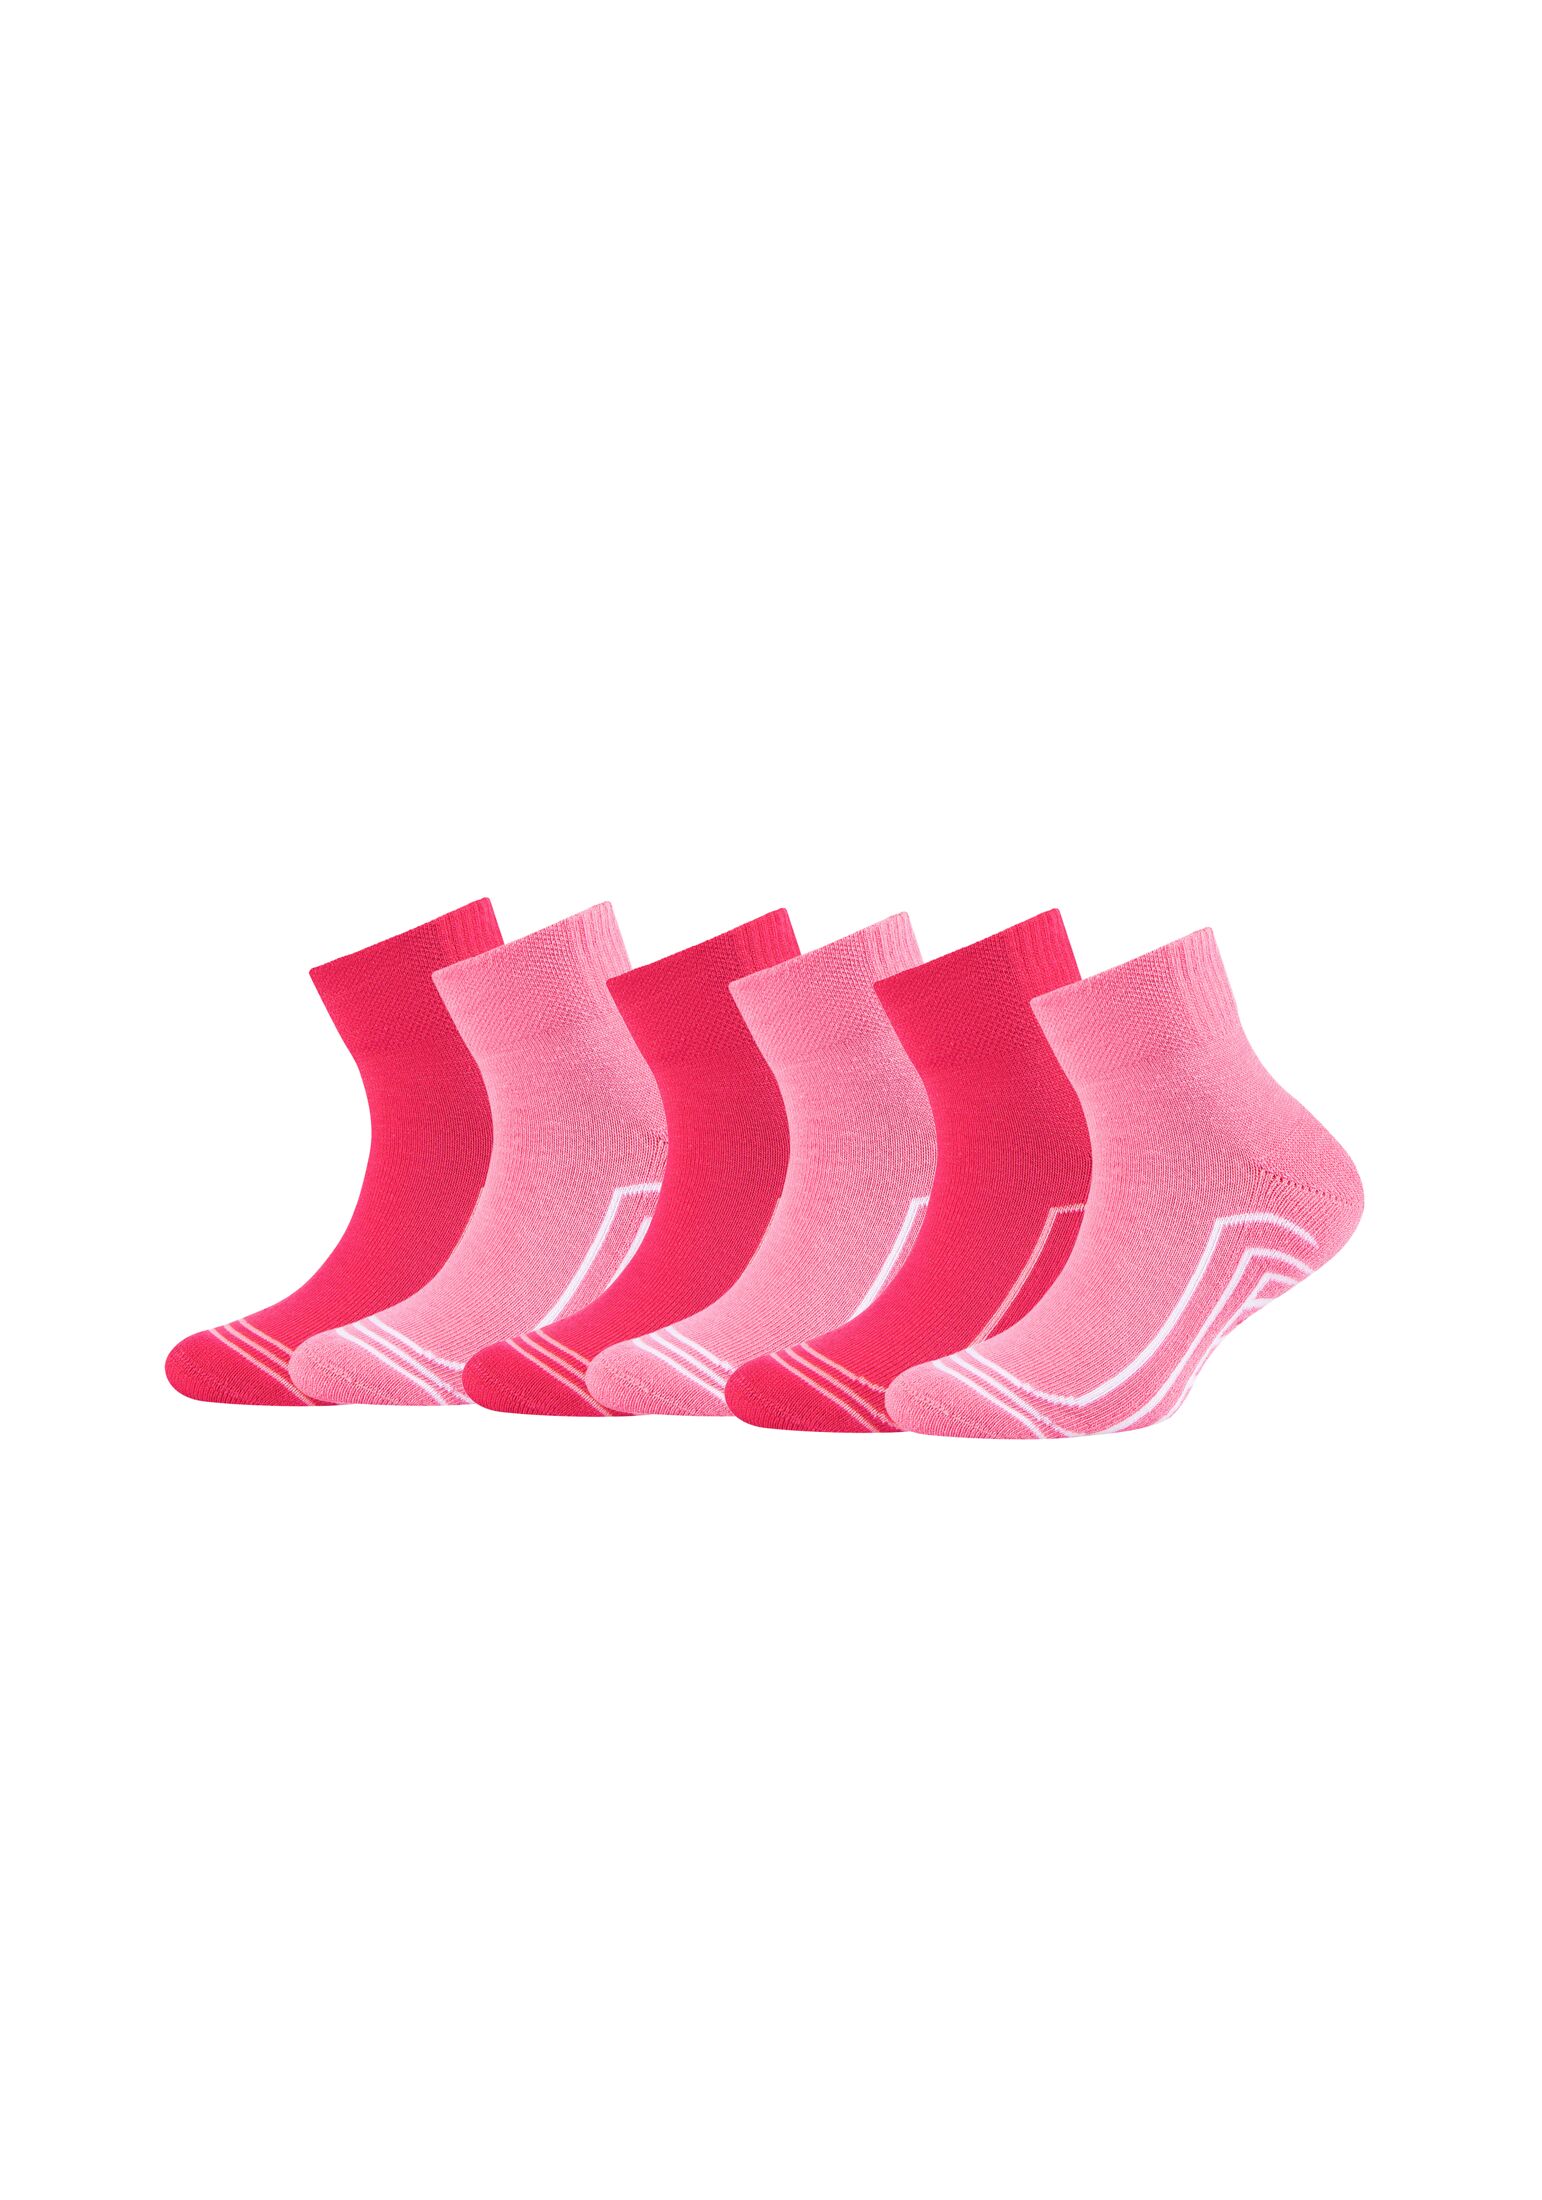 Носки Skechers 6 шт cushioned, цвет pink rose mix